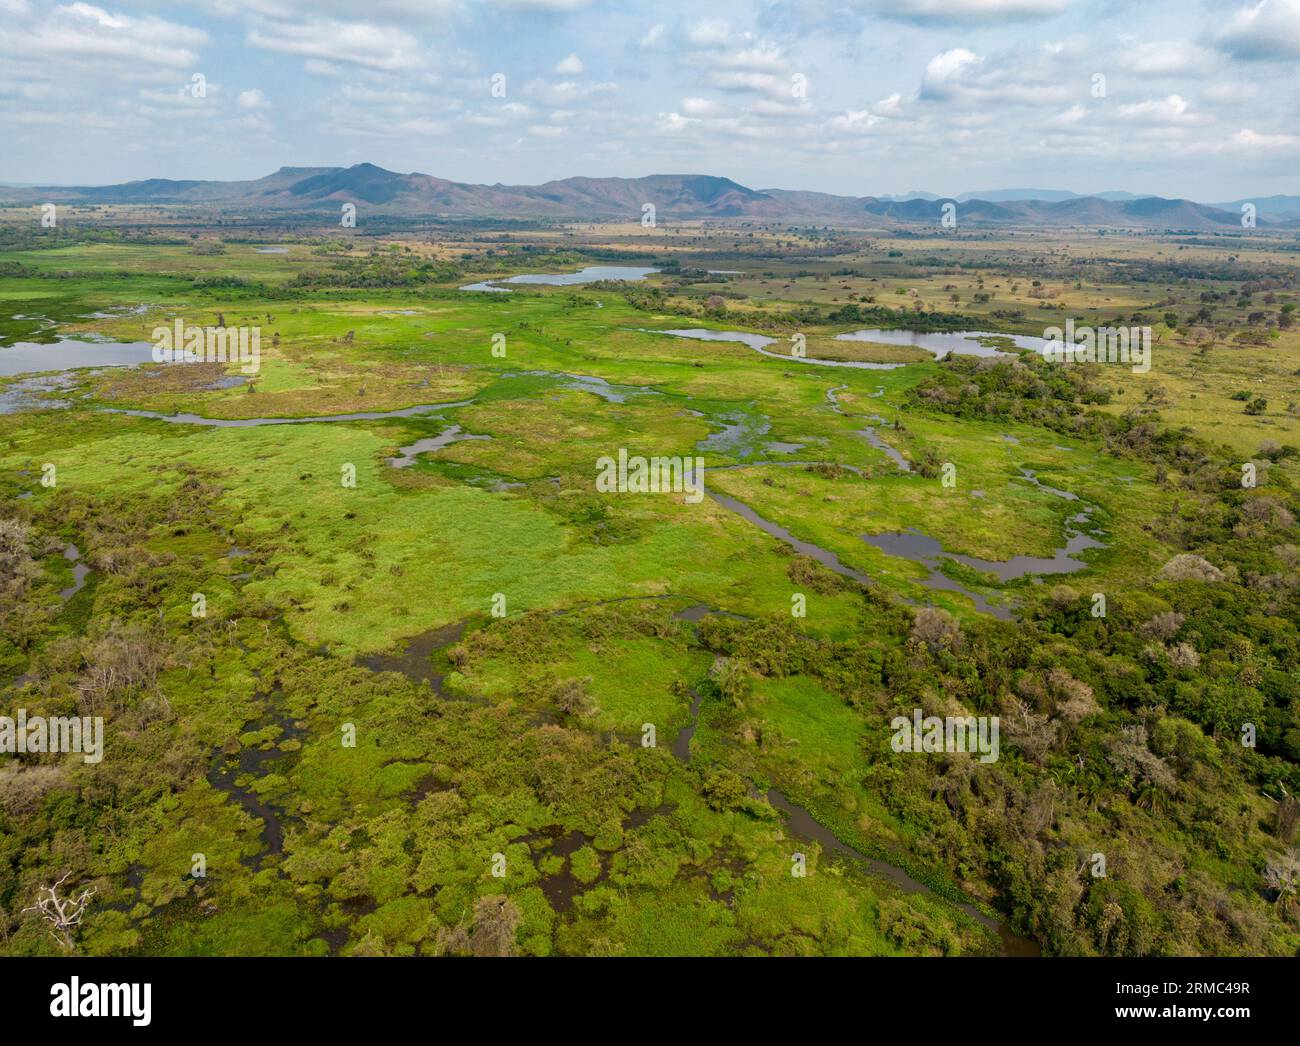 Prise de vue par drone des prairies inondées vert vif du Pantanal au Brésil, la plus grande zone humide d'eau douce du monde - voyageant en Amérique du Sud Banque D'Images